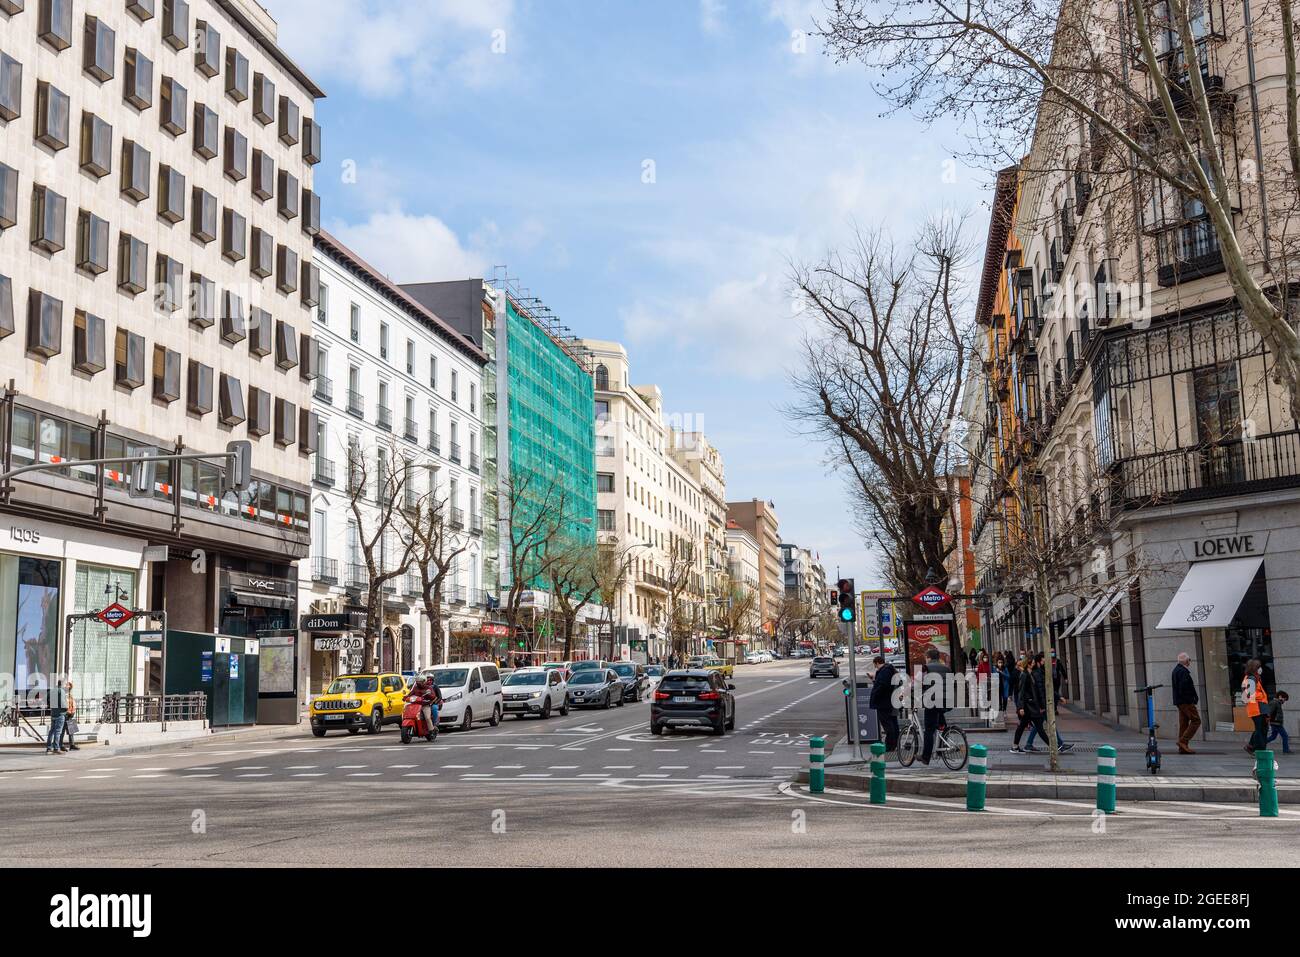 Madrid, Espagne - 7 mars 2021 : vue panoramique sur Serrano amd Goya Street, un quartier commerçant bien connu dans le quartier de Salamanca, l'une des plus riches zones W Banque D'Images